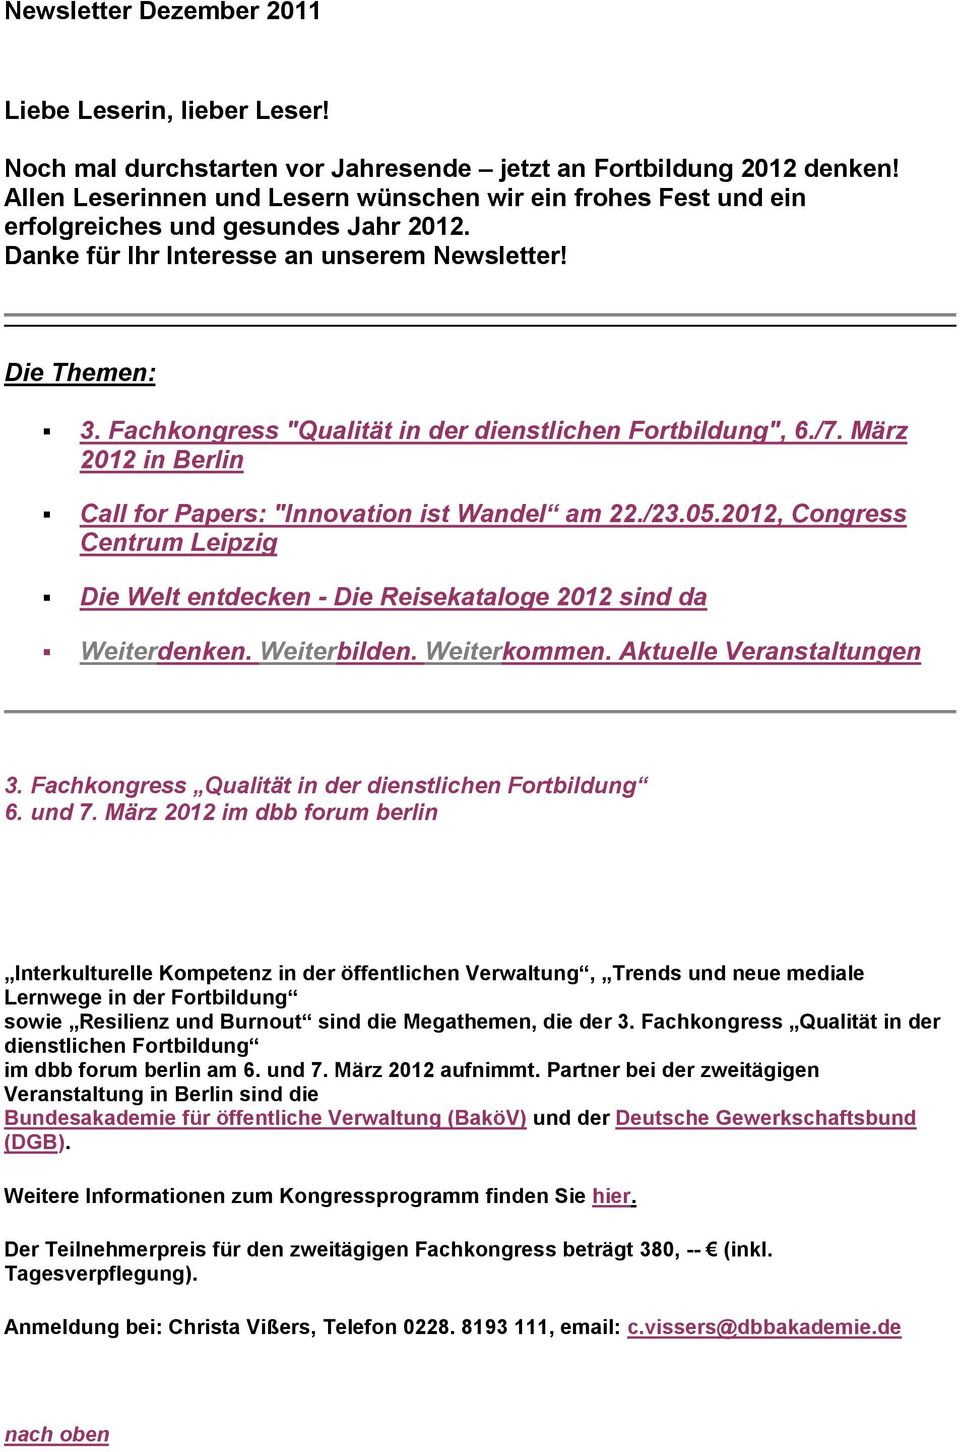 Fachkongress "Qualität in der dienstlichen Fortbildung", 6./7. März 2012 in Berlin Call for Papers: "Innovation ist Wandel am 22./23.05.